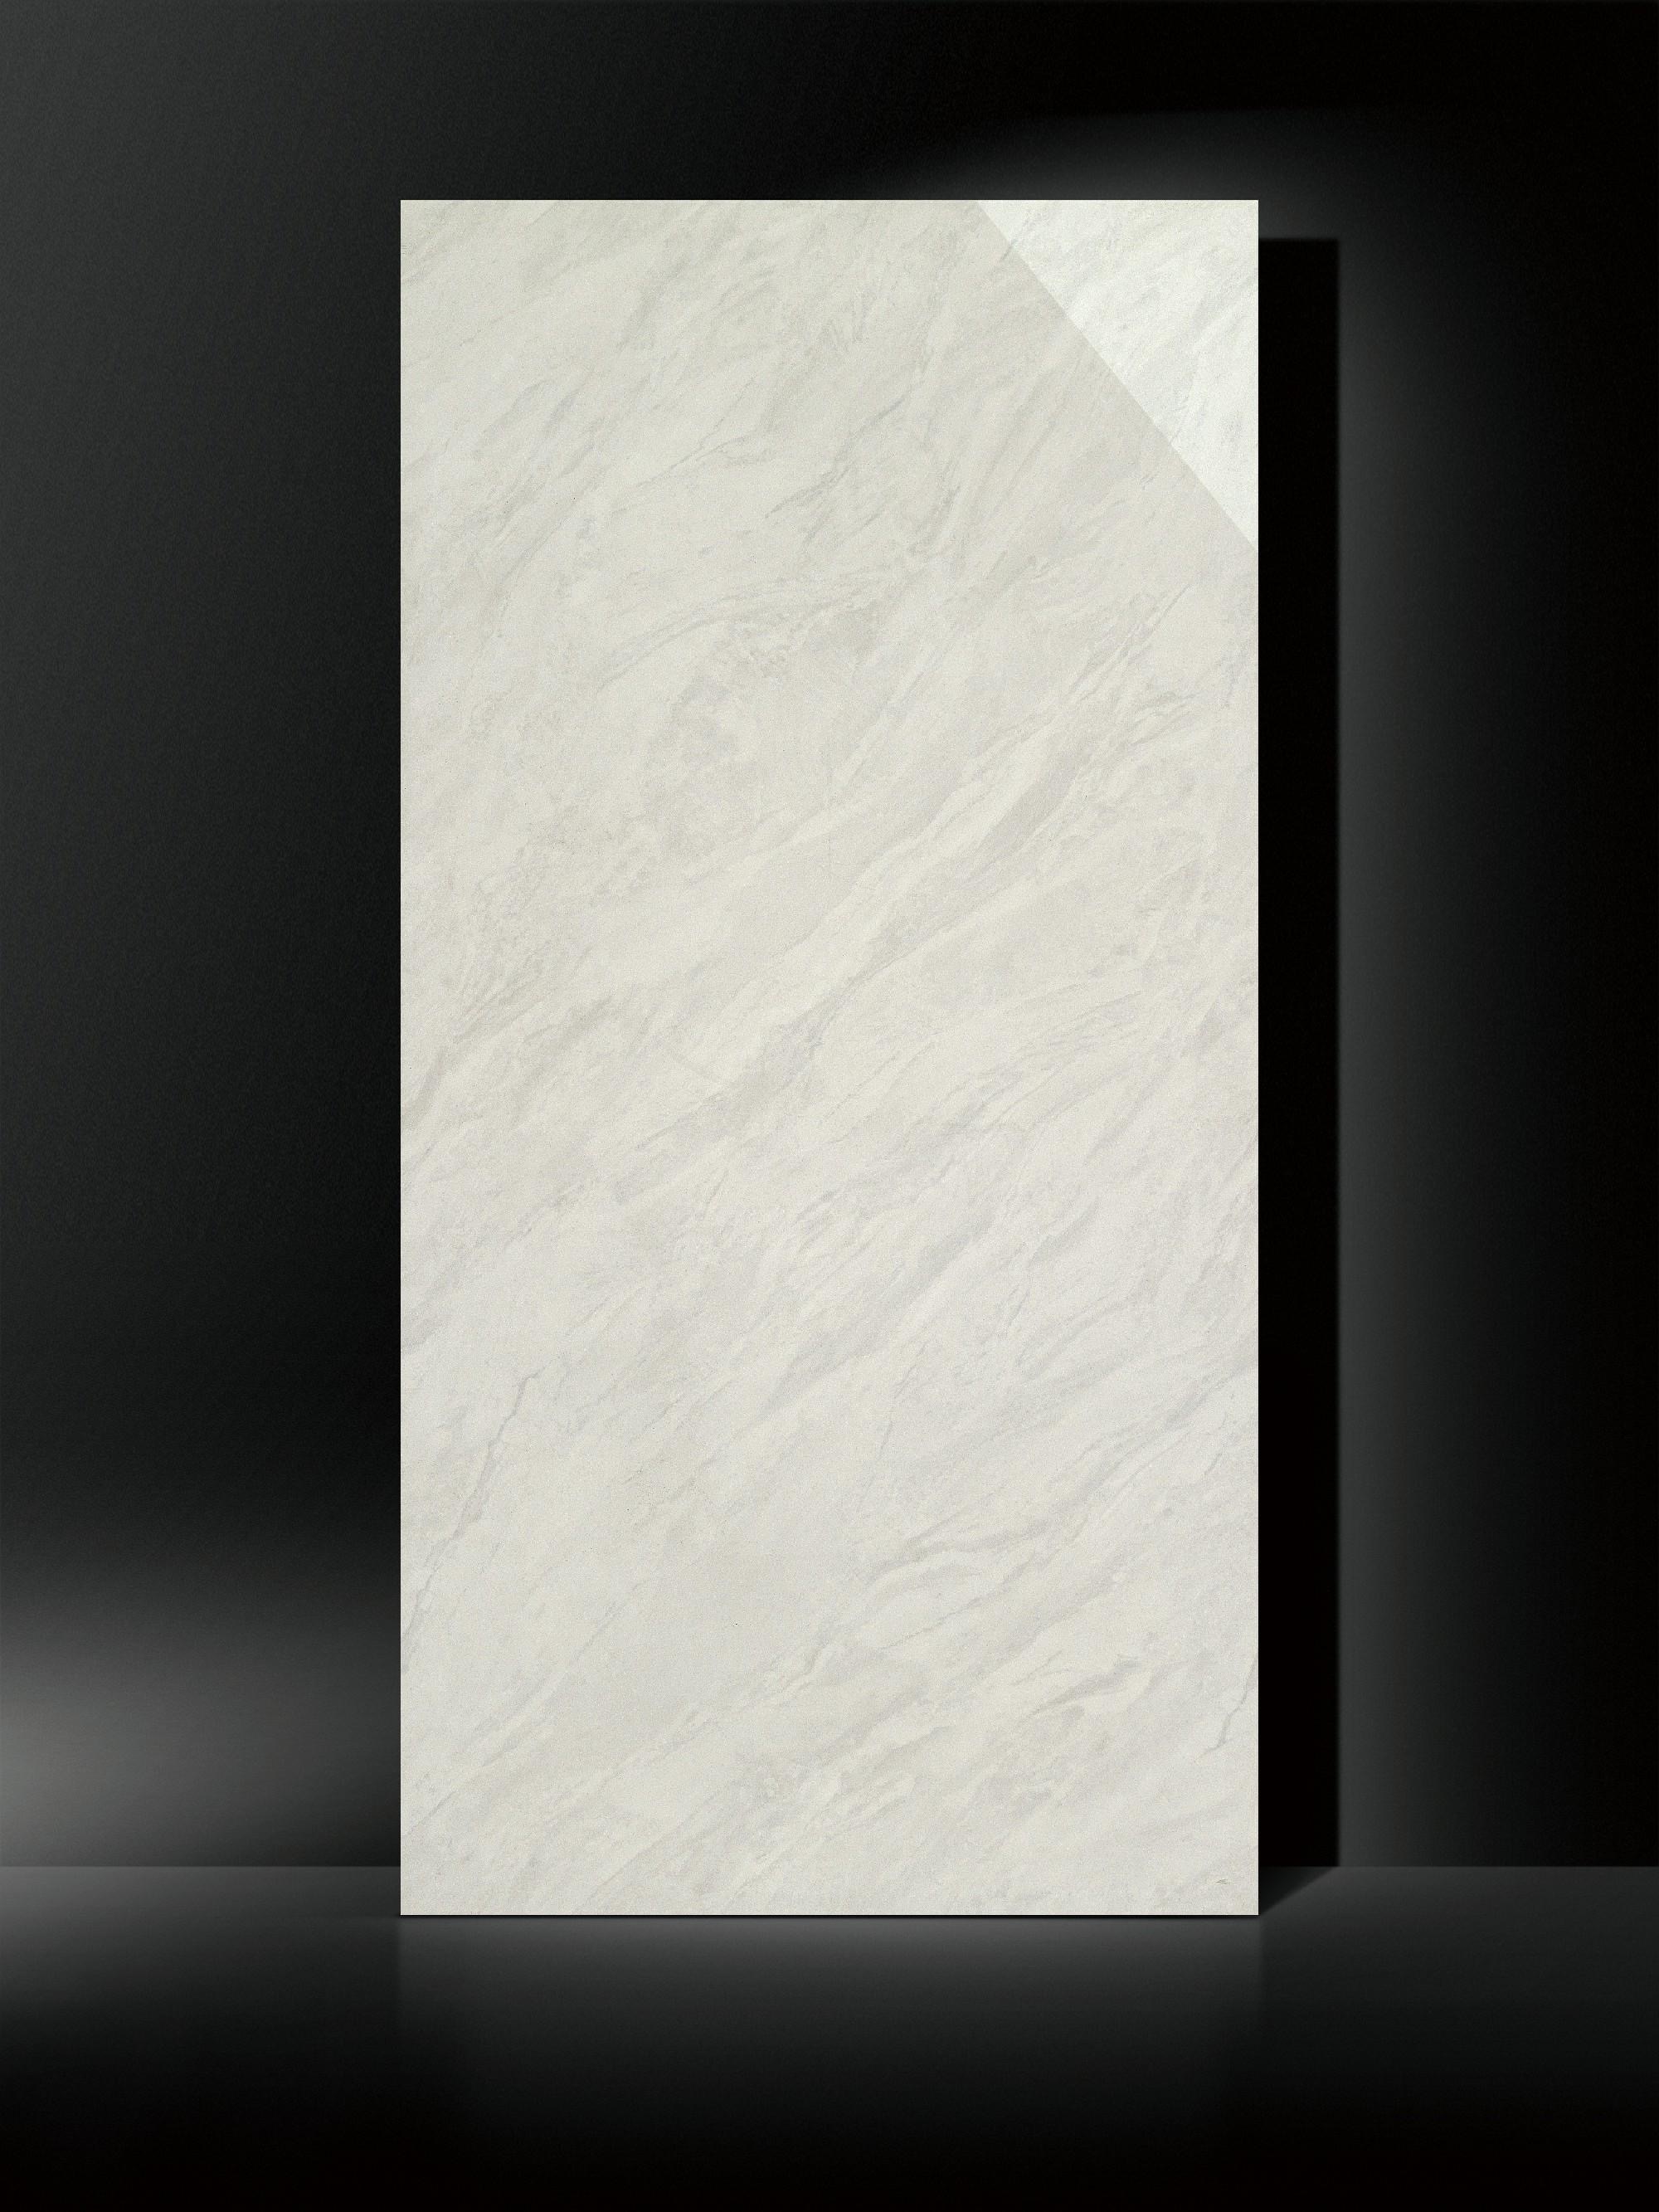 40x80cm 雲石紋白岩 瓷磚 中板 - SCHX46A05